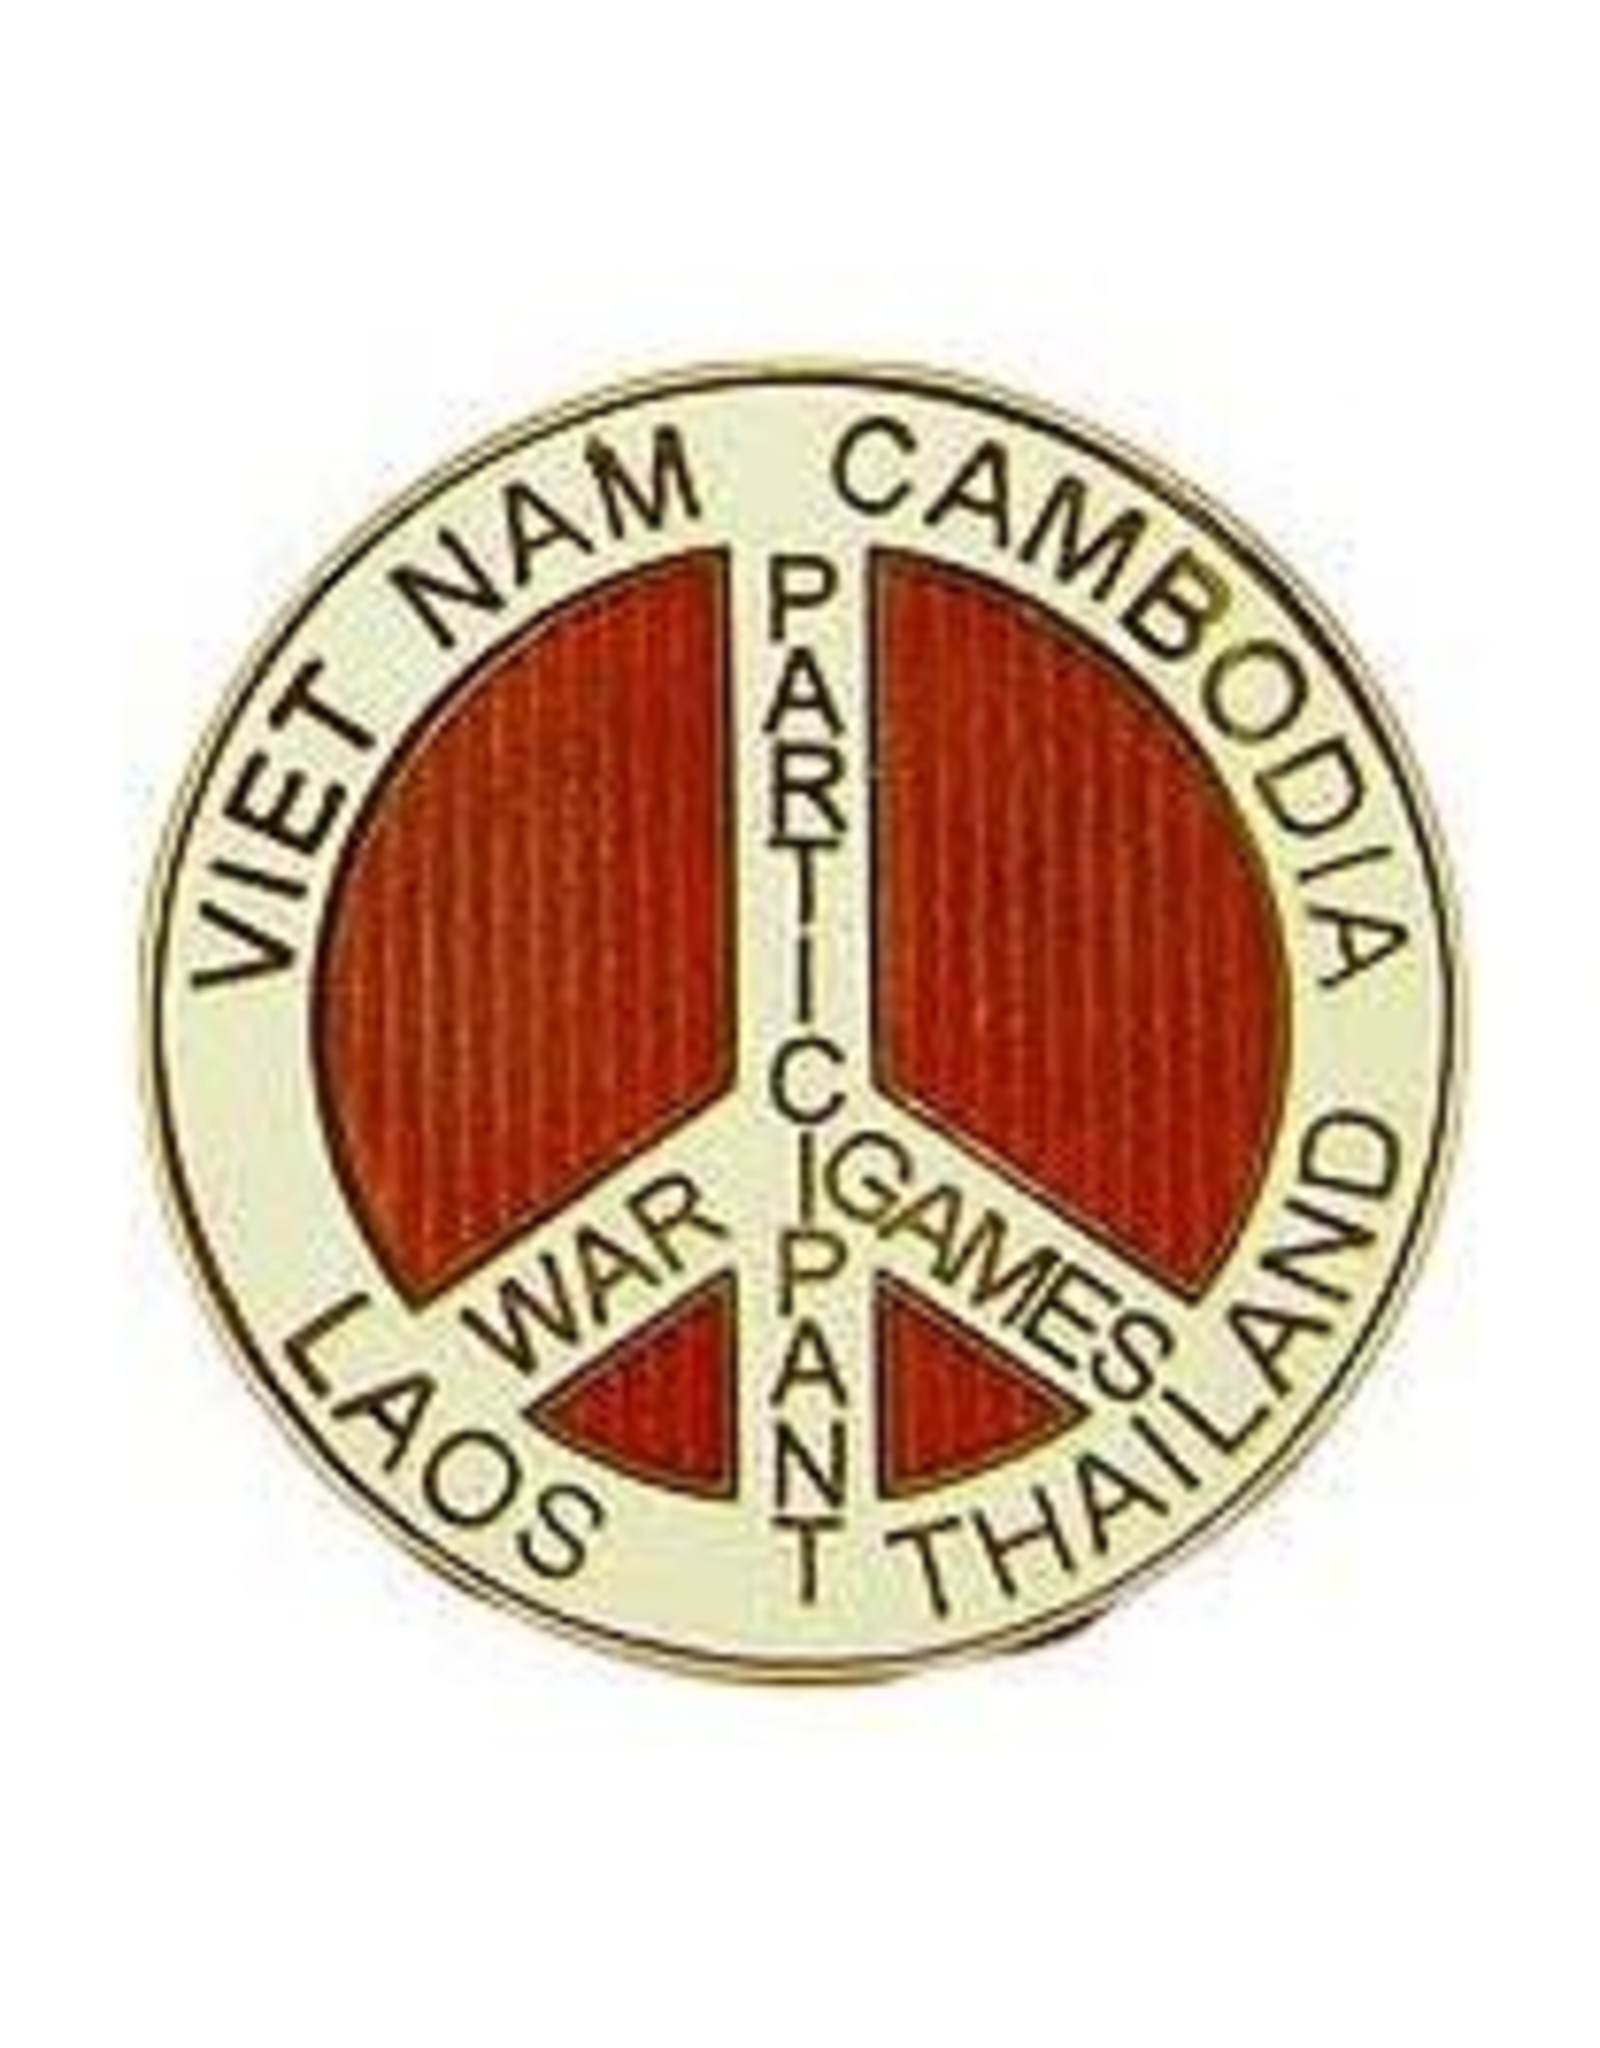 Pin - Viet War Game SE Asia